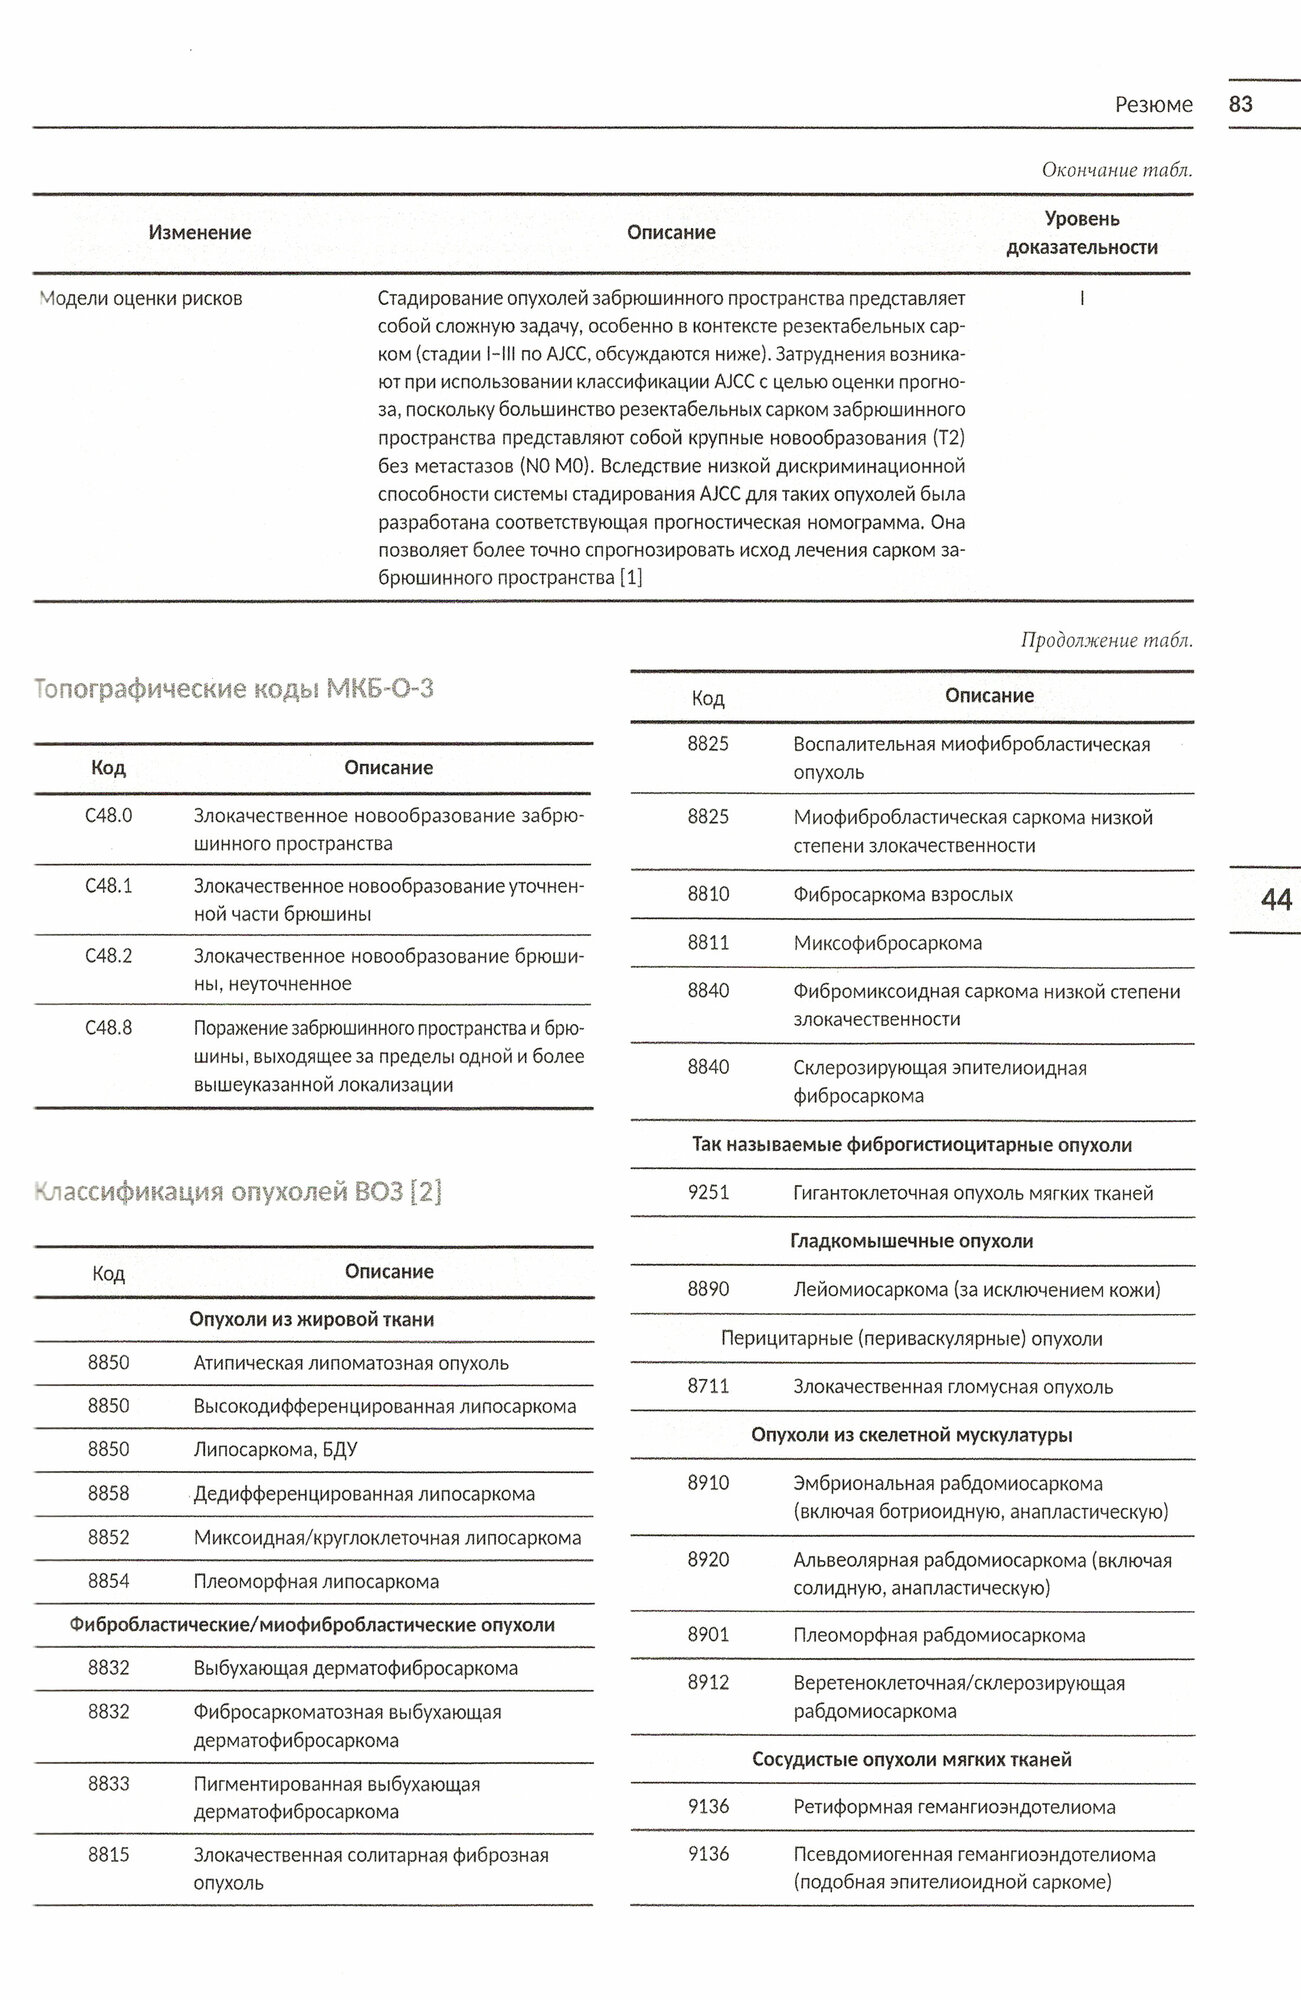 Классификация опухолей TNM. Том III. Гемобластозы. Саркомы. Опухоли ЦНС, глаза, эндокринных желез - фото №4